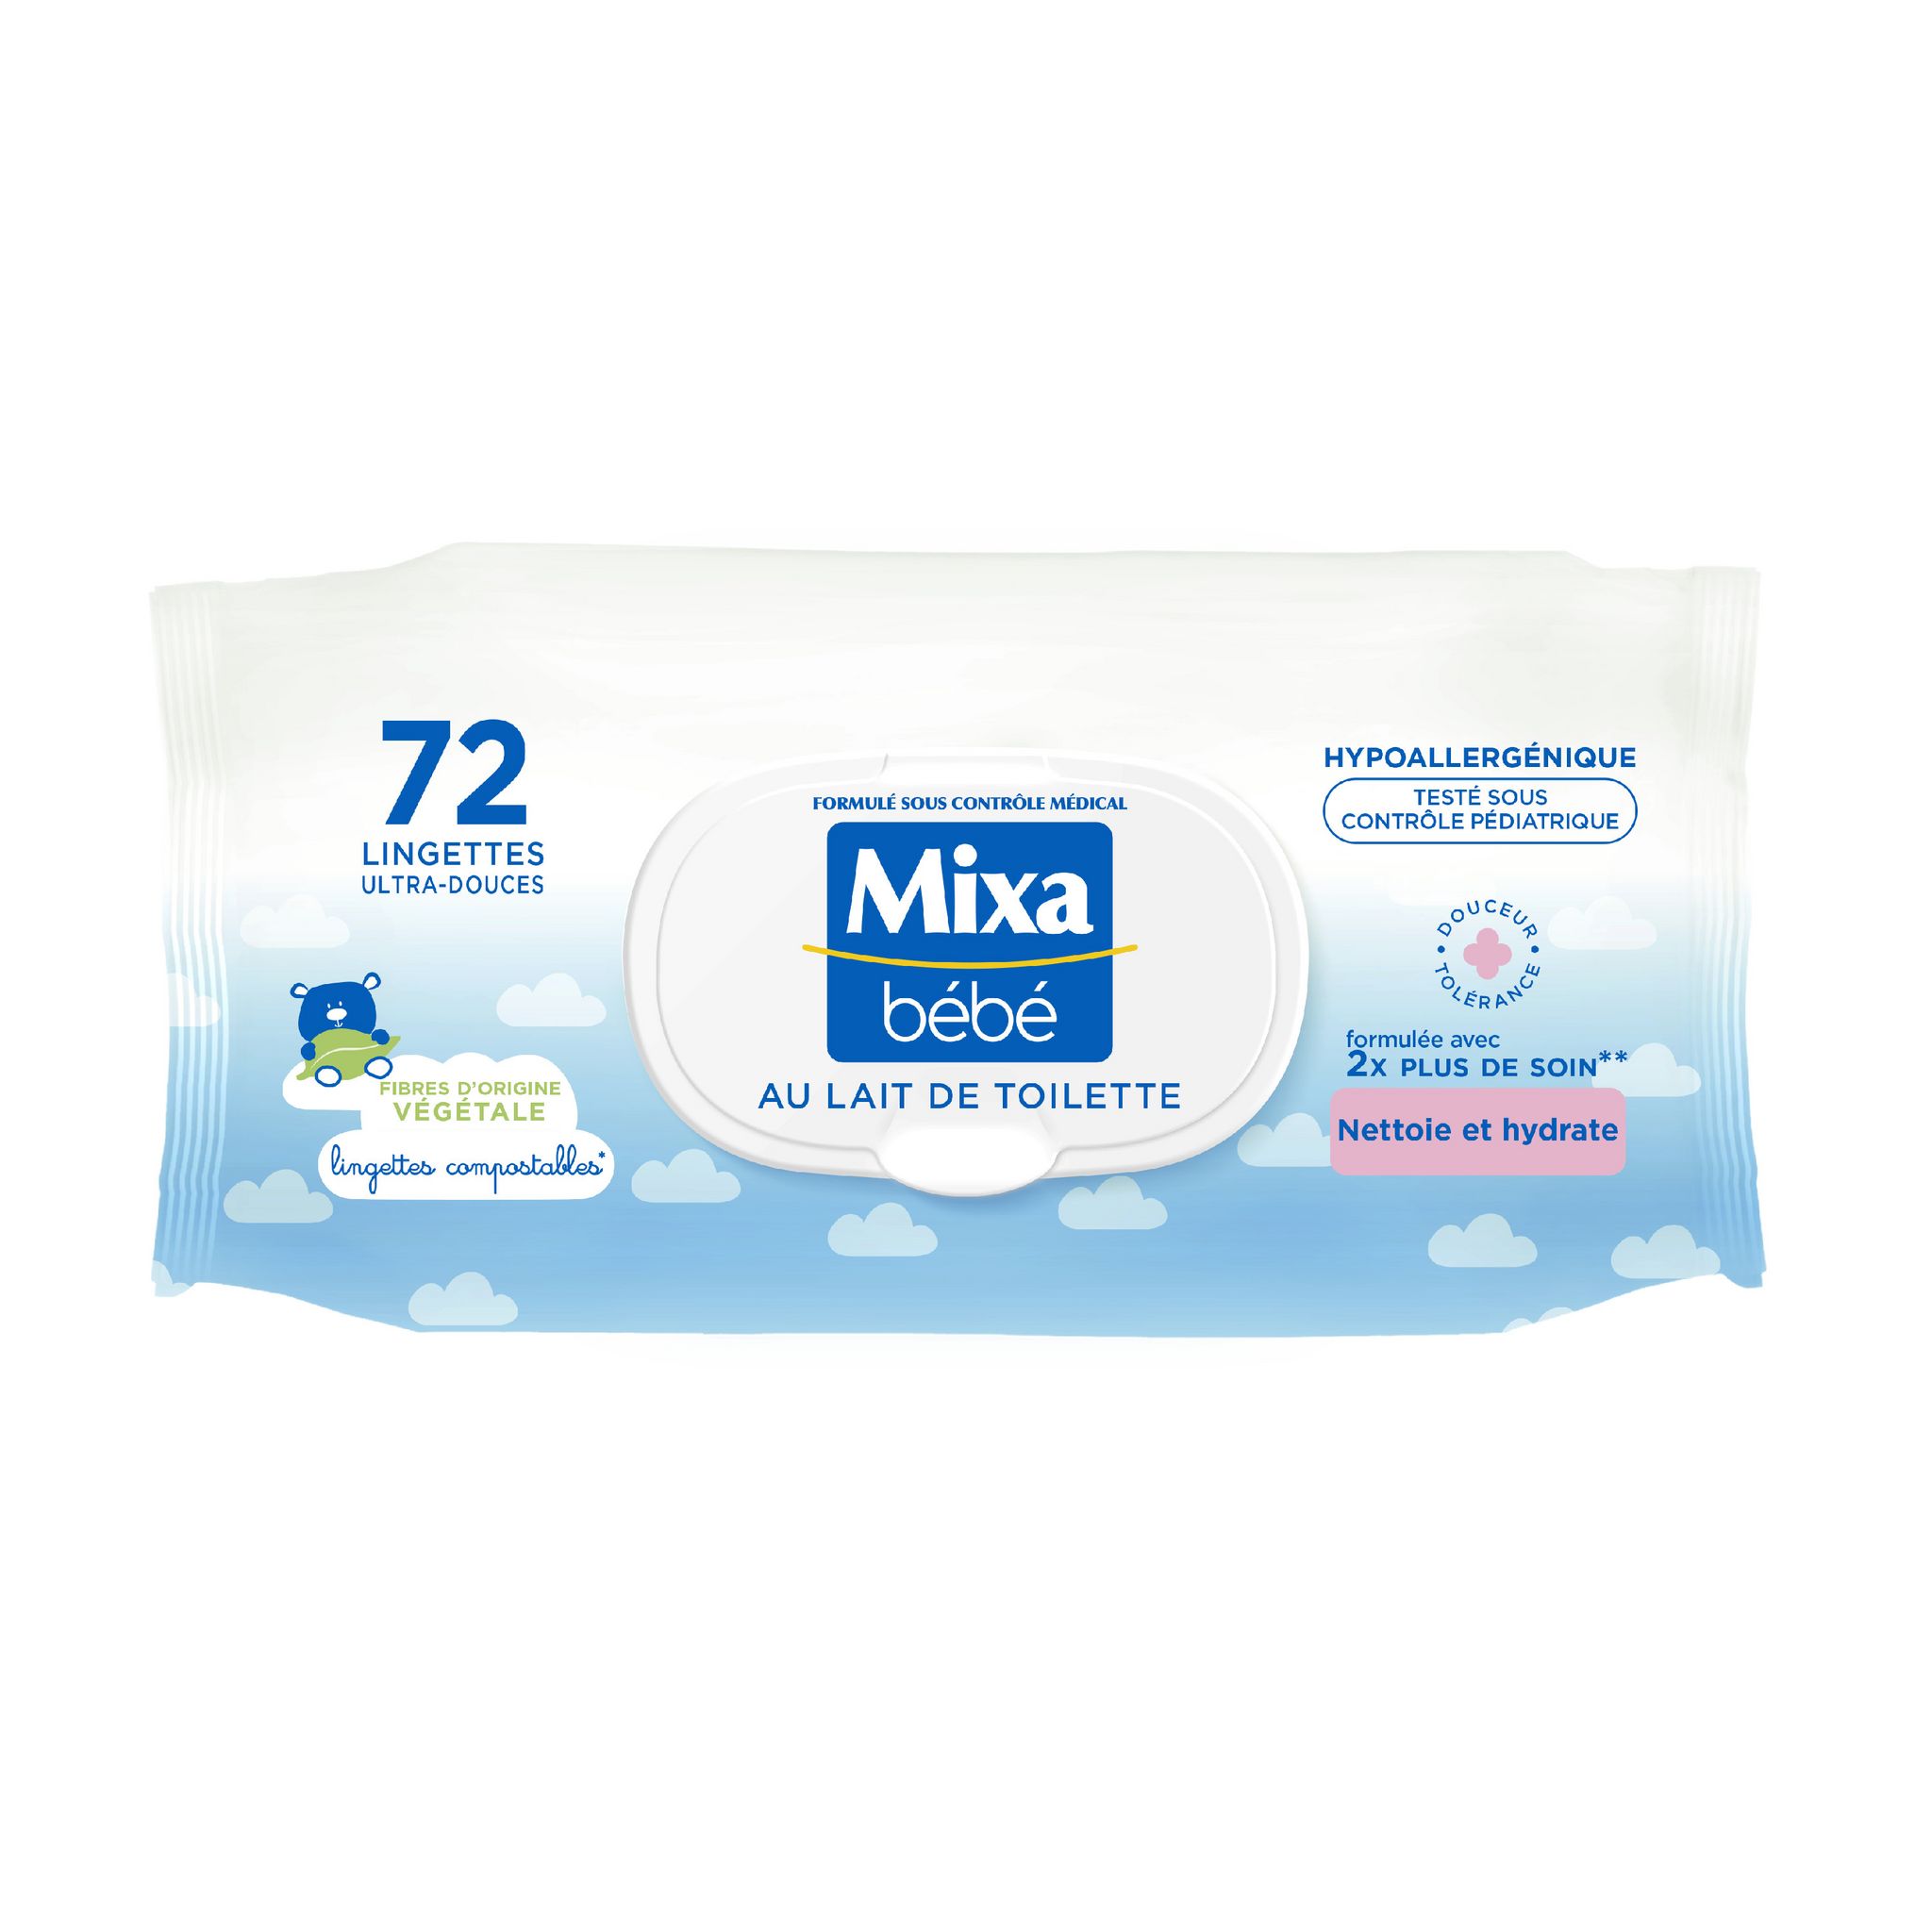 Composition MIXA BÉBÉ Lingettes ultra-douces au lait de toilette